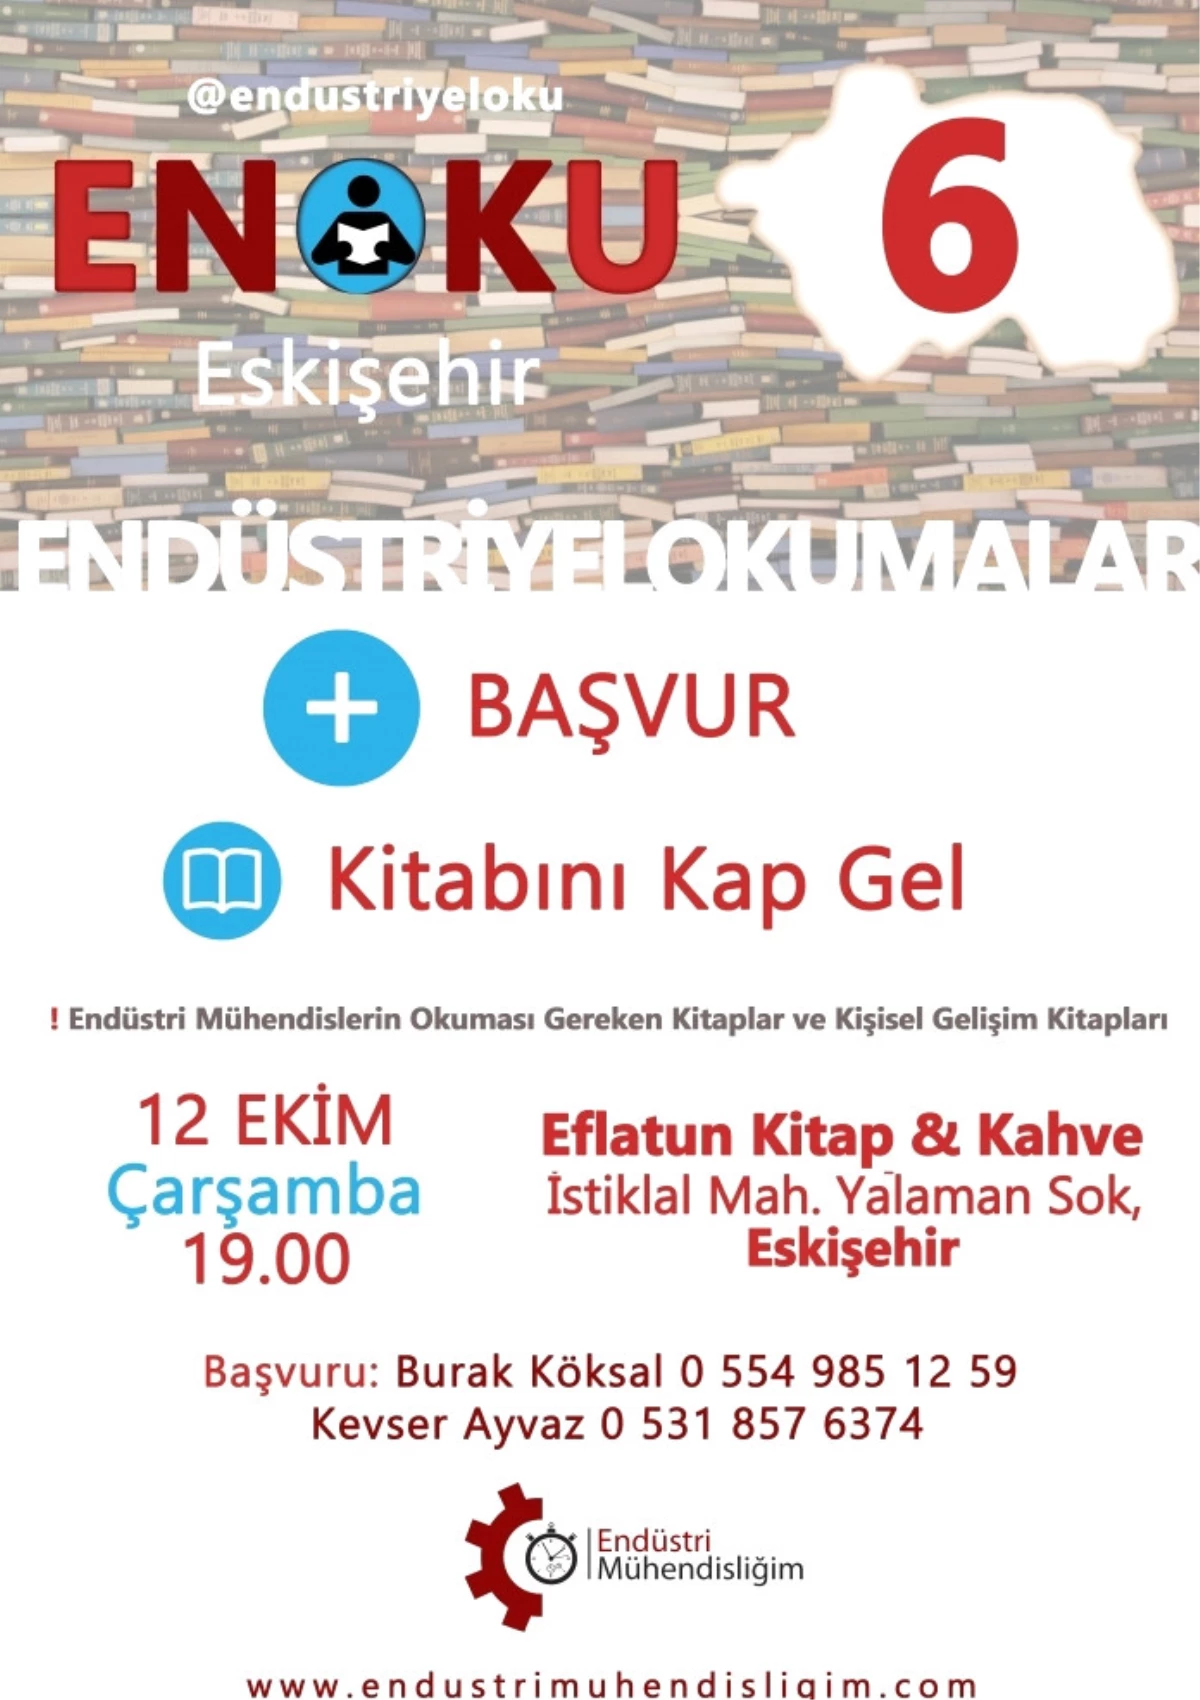 Endüstriyel Okumalar (Enoku) 6 - Eskişehir